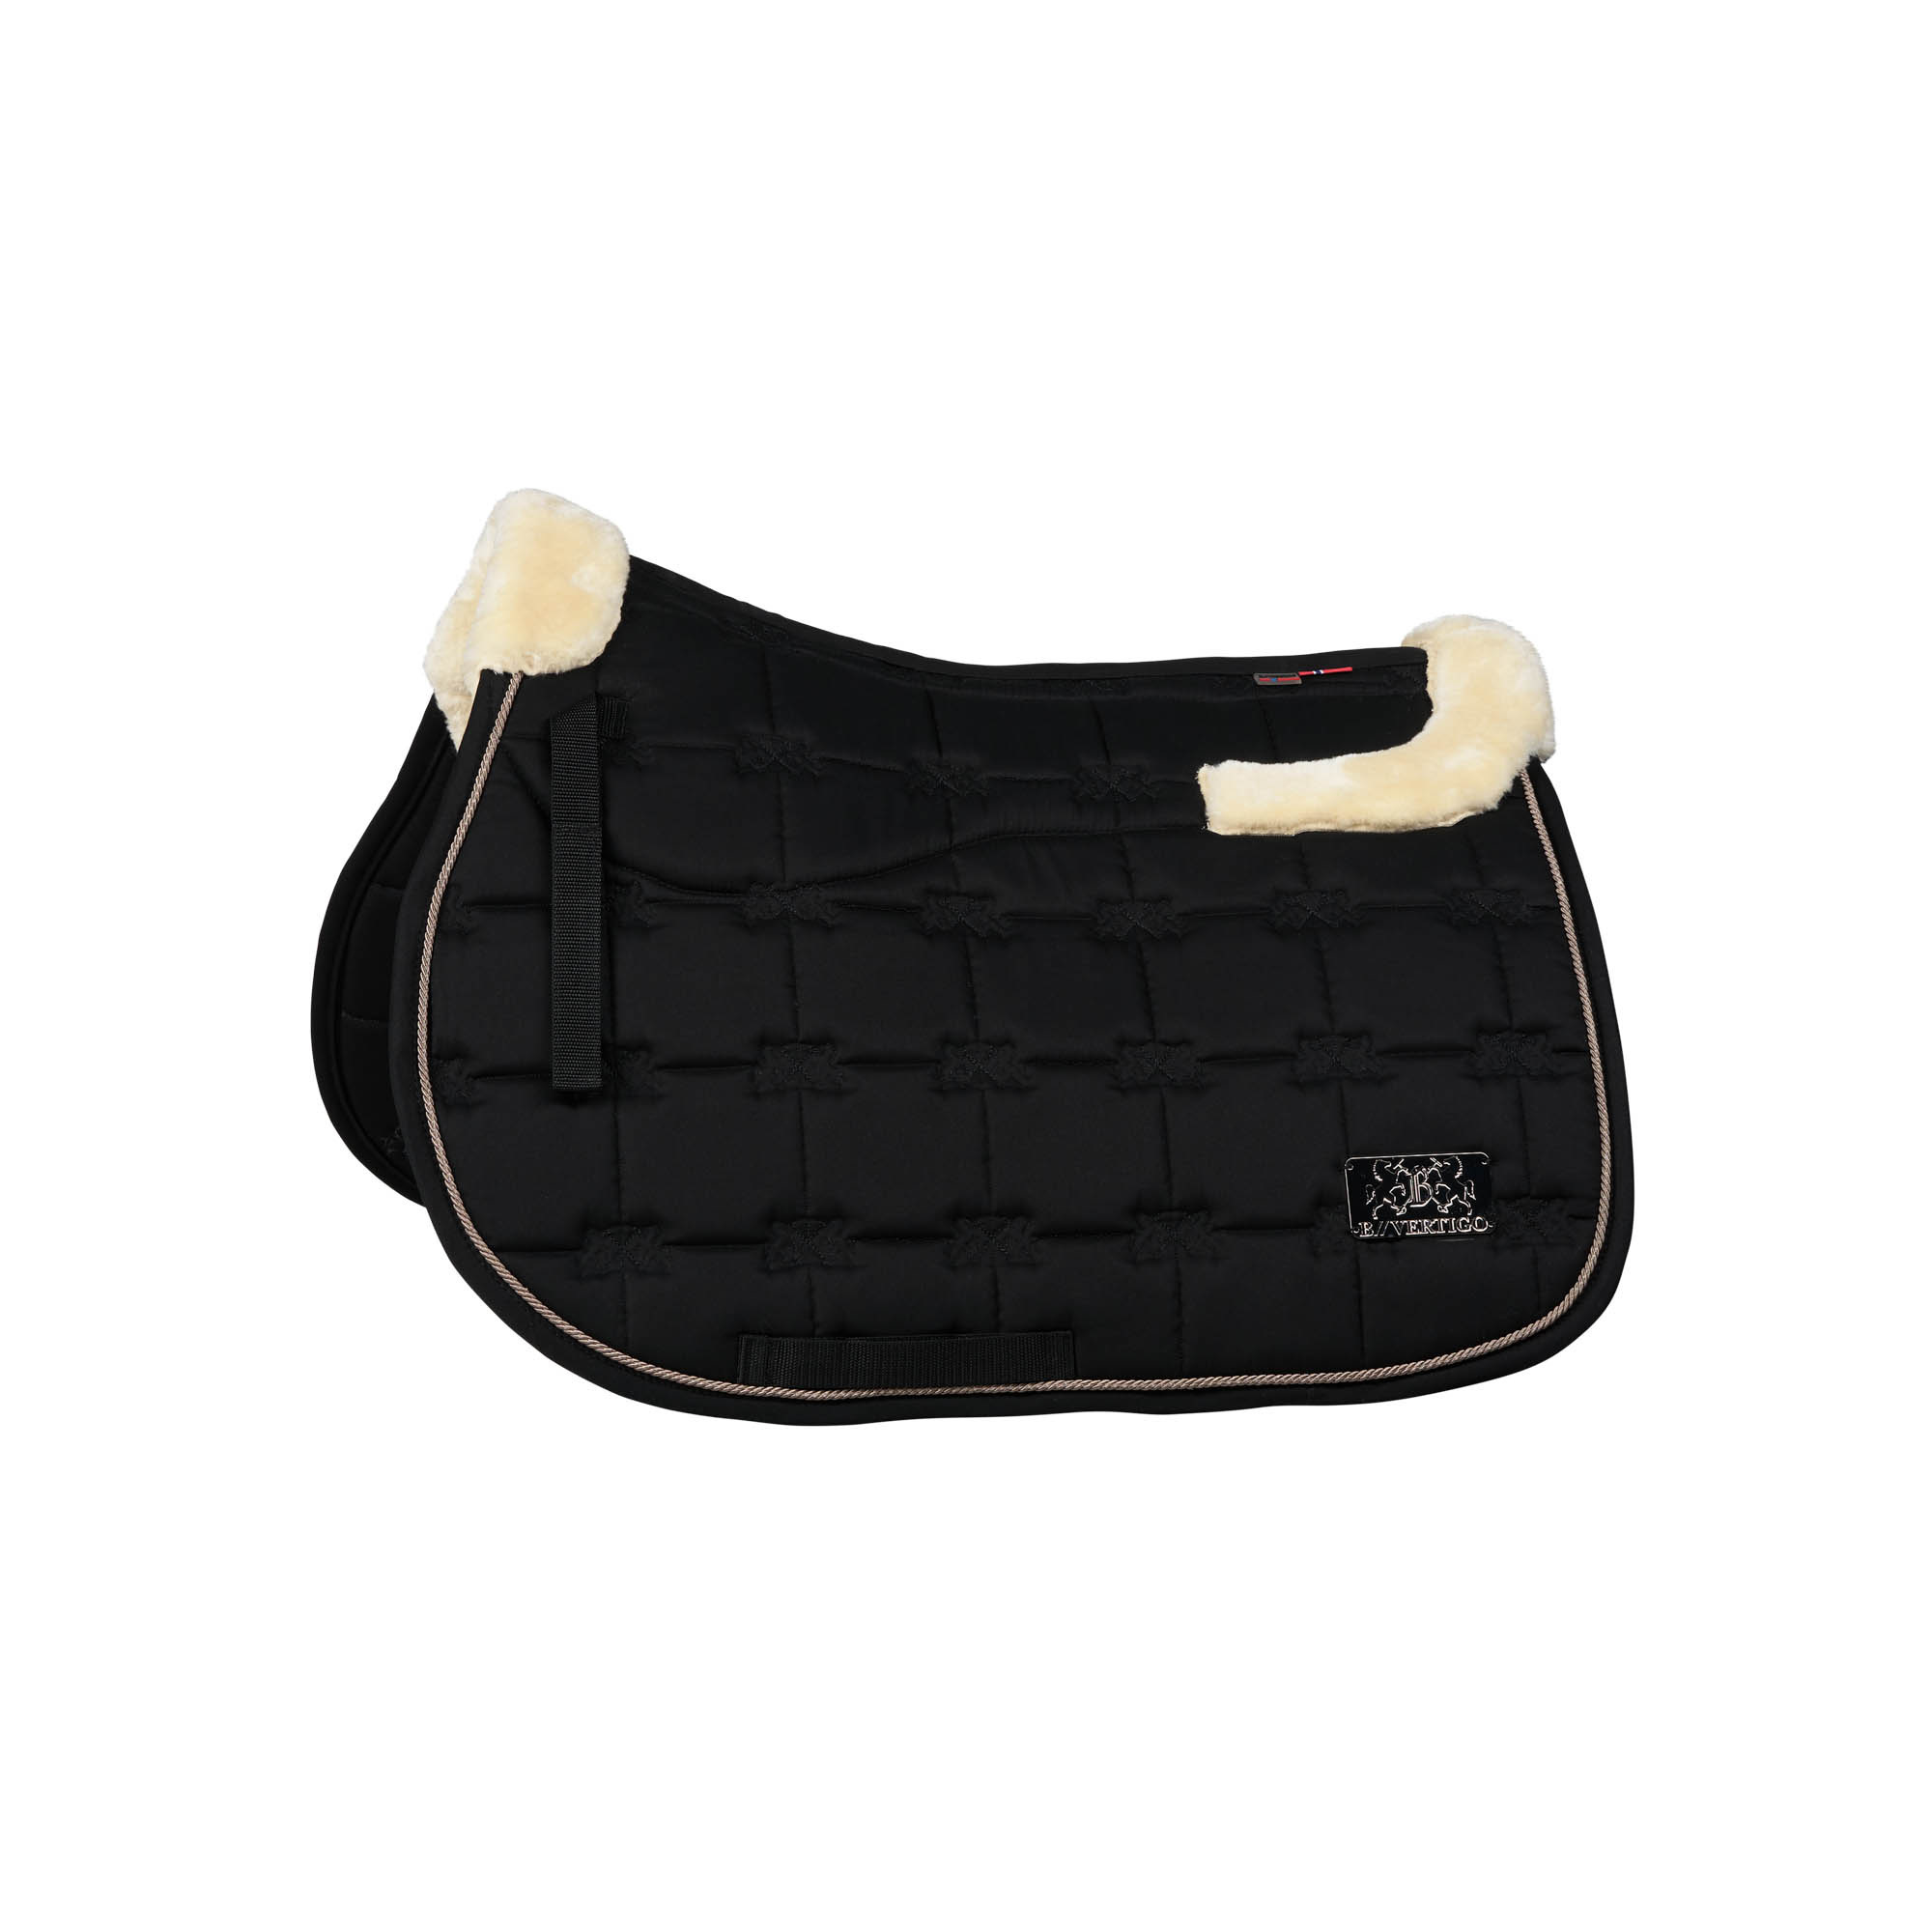 Buy B Vertigo Evolve Dressage Saddle Pad with Anti-Slip Cushion